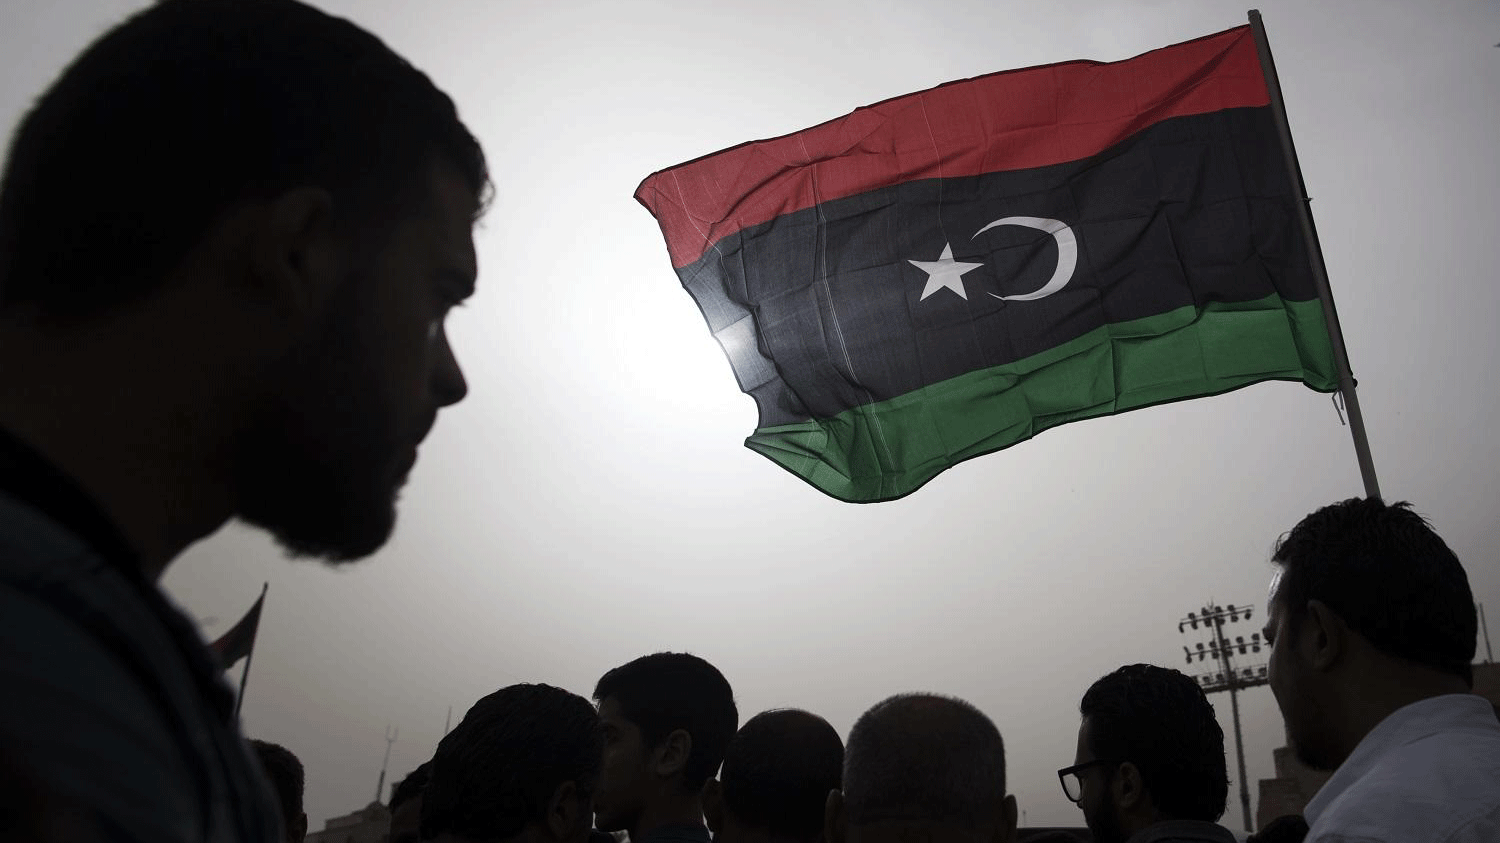 مقاتلون ينتمون لقوات الحكومة المدعومة دوليا يرفعون علم ليبيا خلال جنازة أحد المقاتلين، 24 أبريل 2019